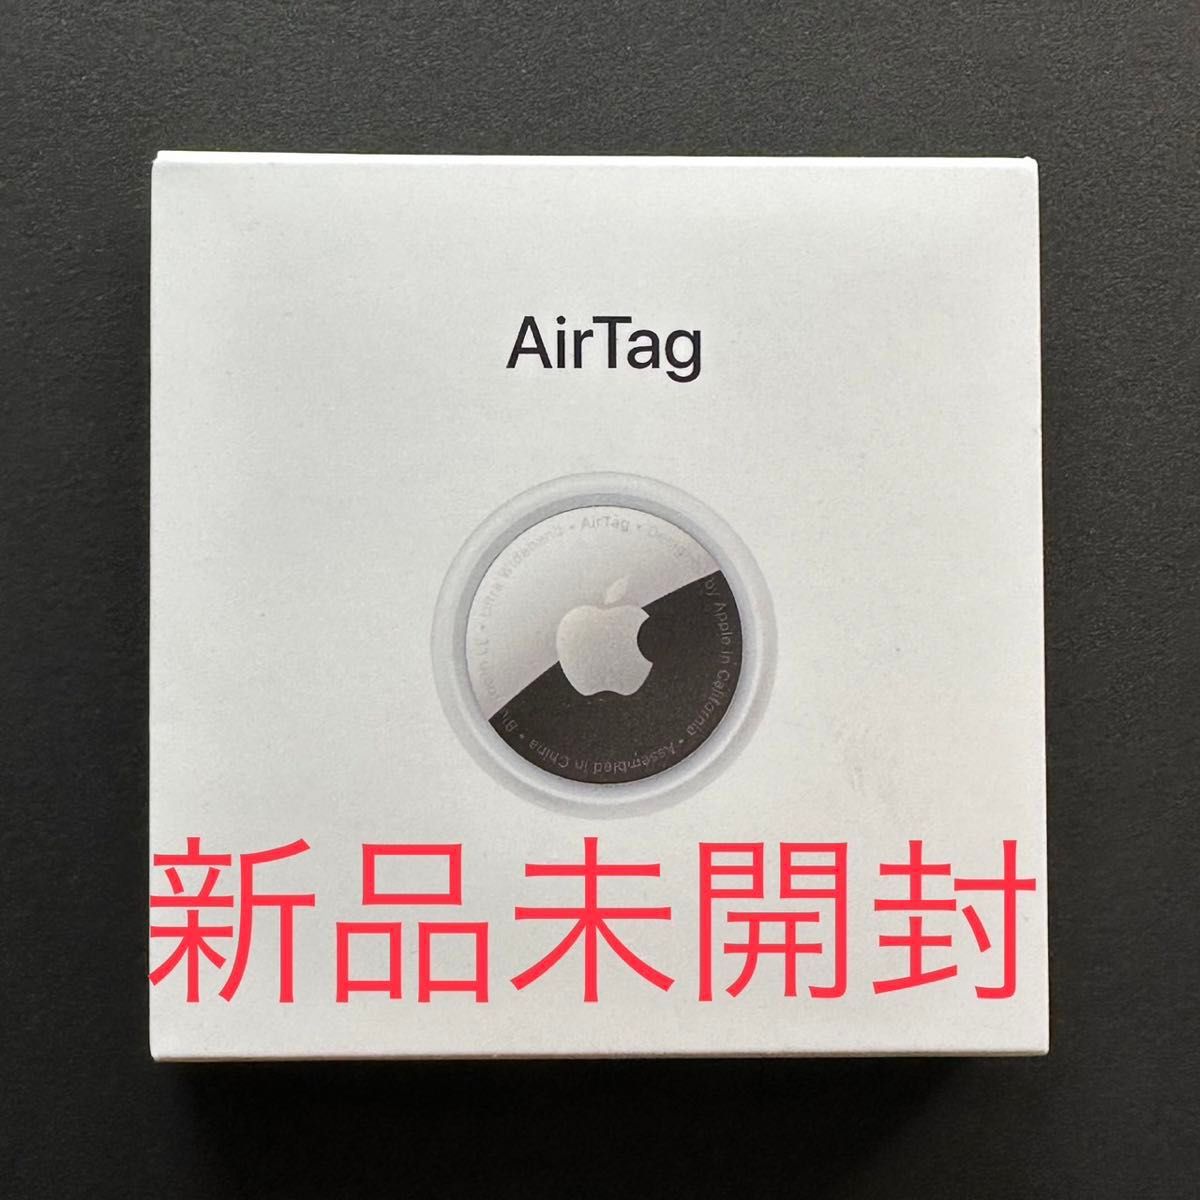 【Apple】AirTag1Pack◆MX532ZP/A◆新品未開封◆ネコポス発送